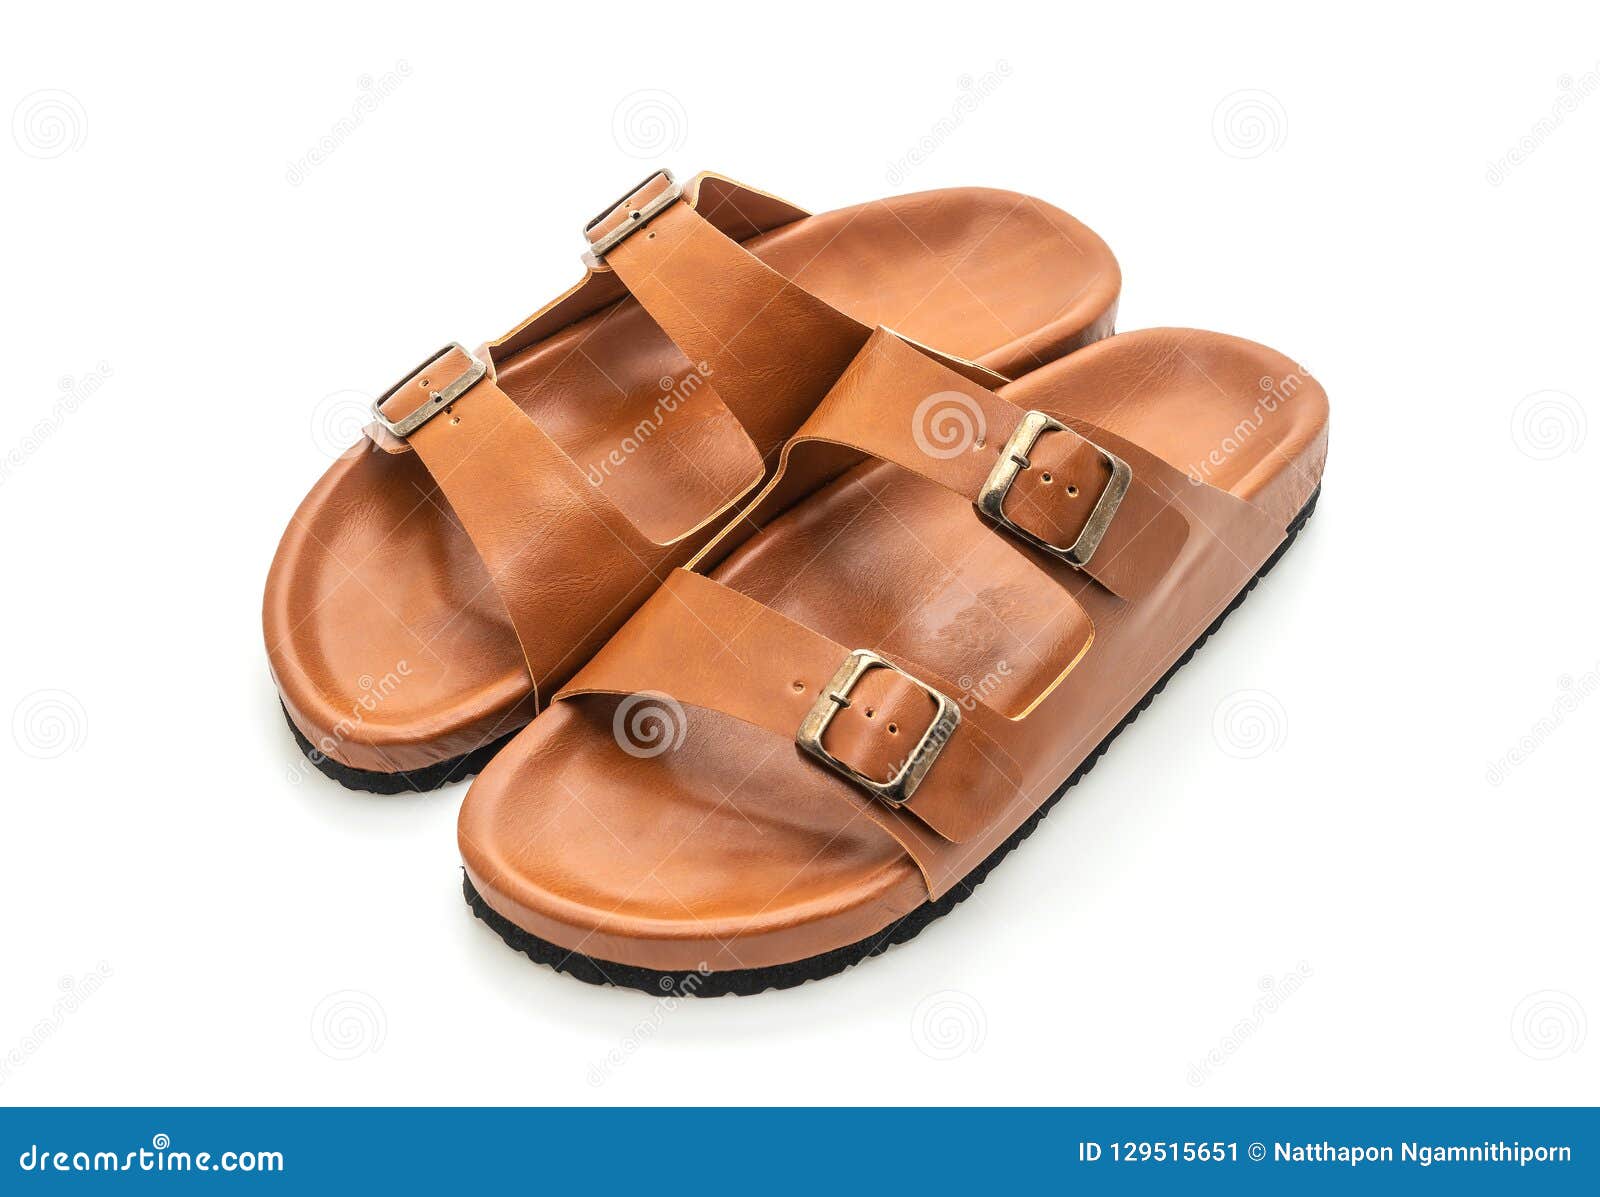 men leather sandals